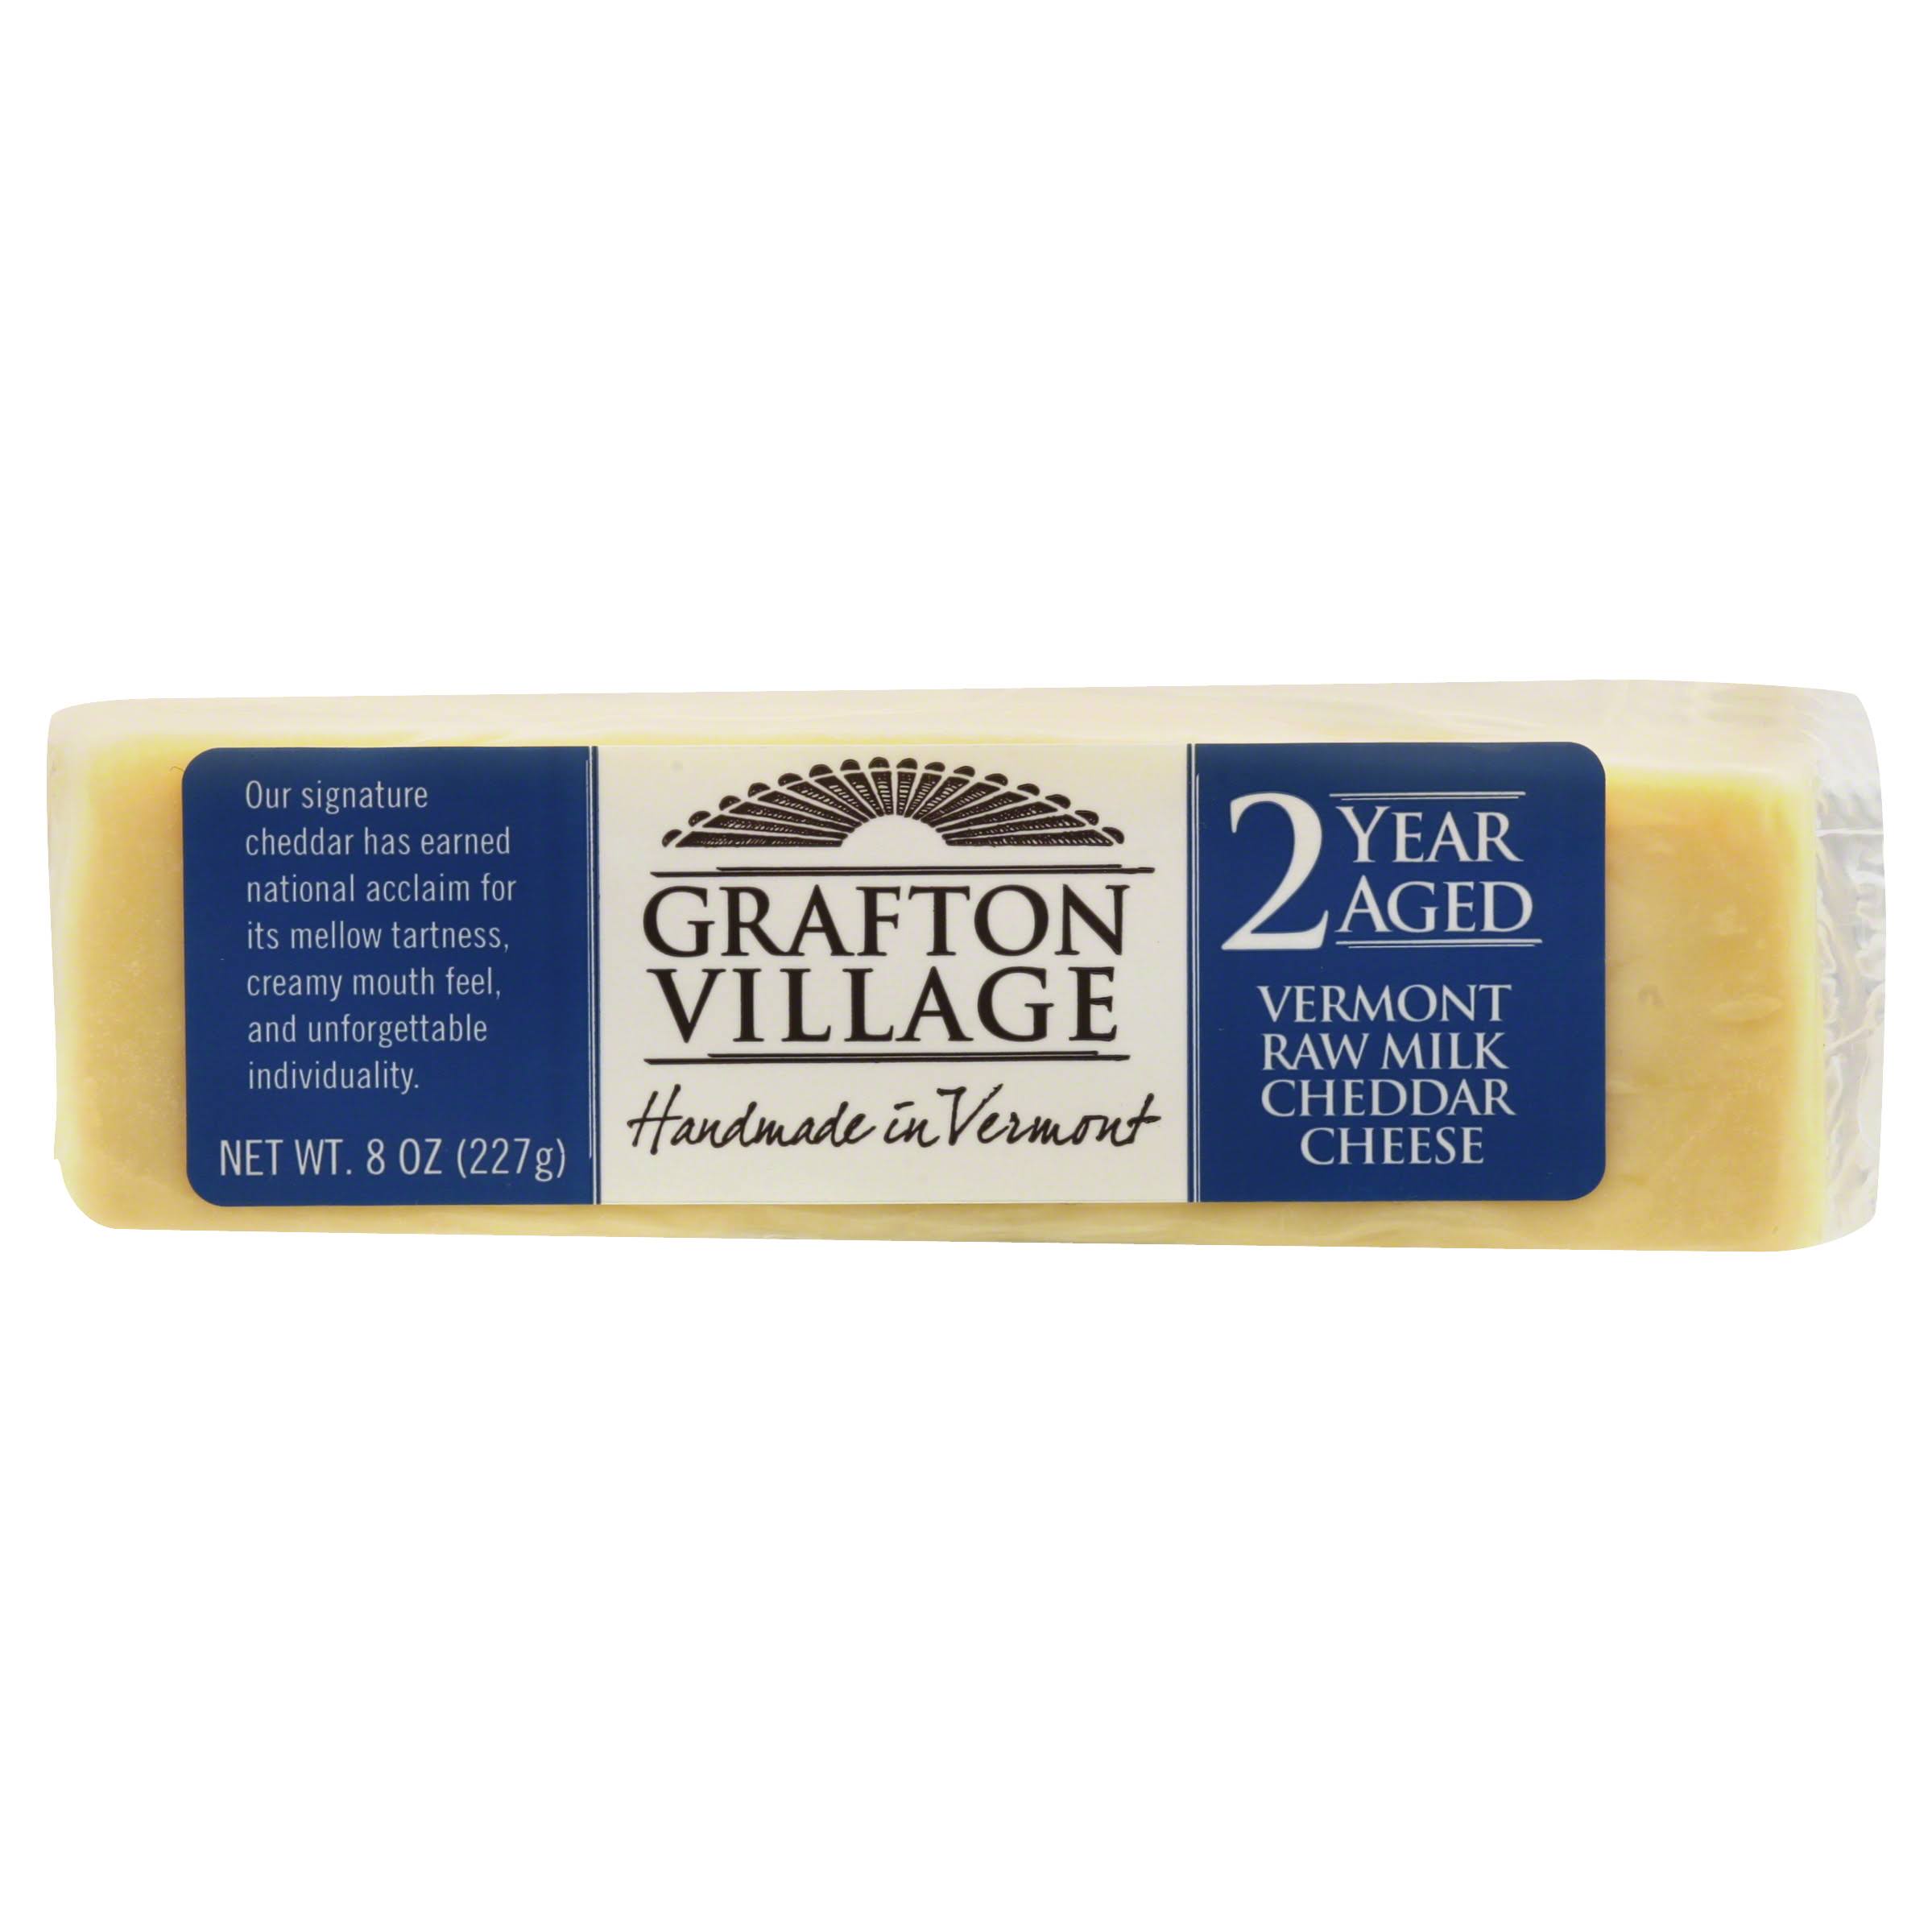 Grafton Village Cheese, Cheddar, Vermont Raw Milk - 8 oz